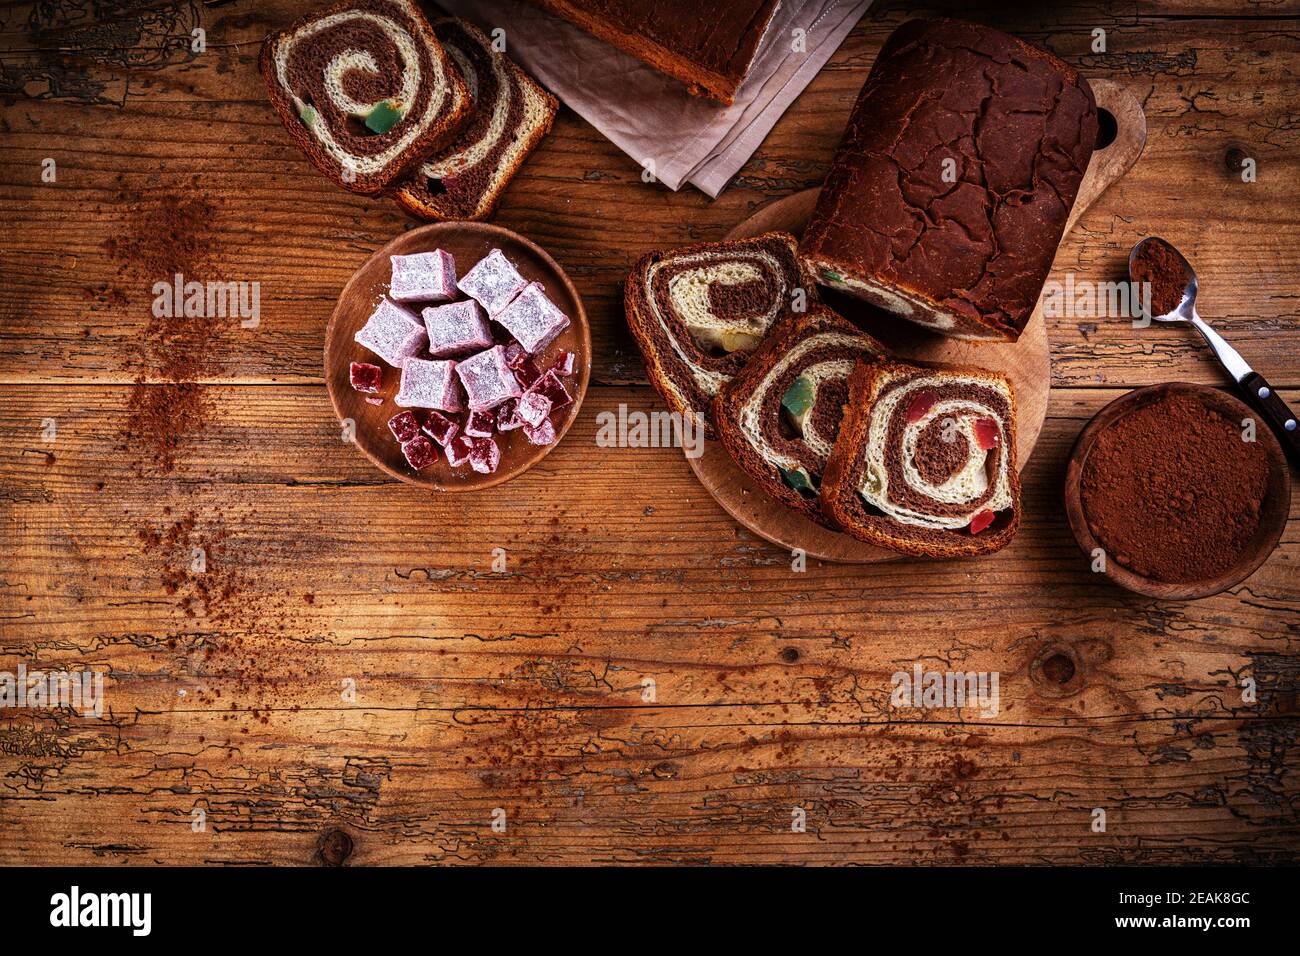 Handmade swirl chocolate sweet bread Stock Photo